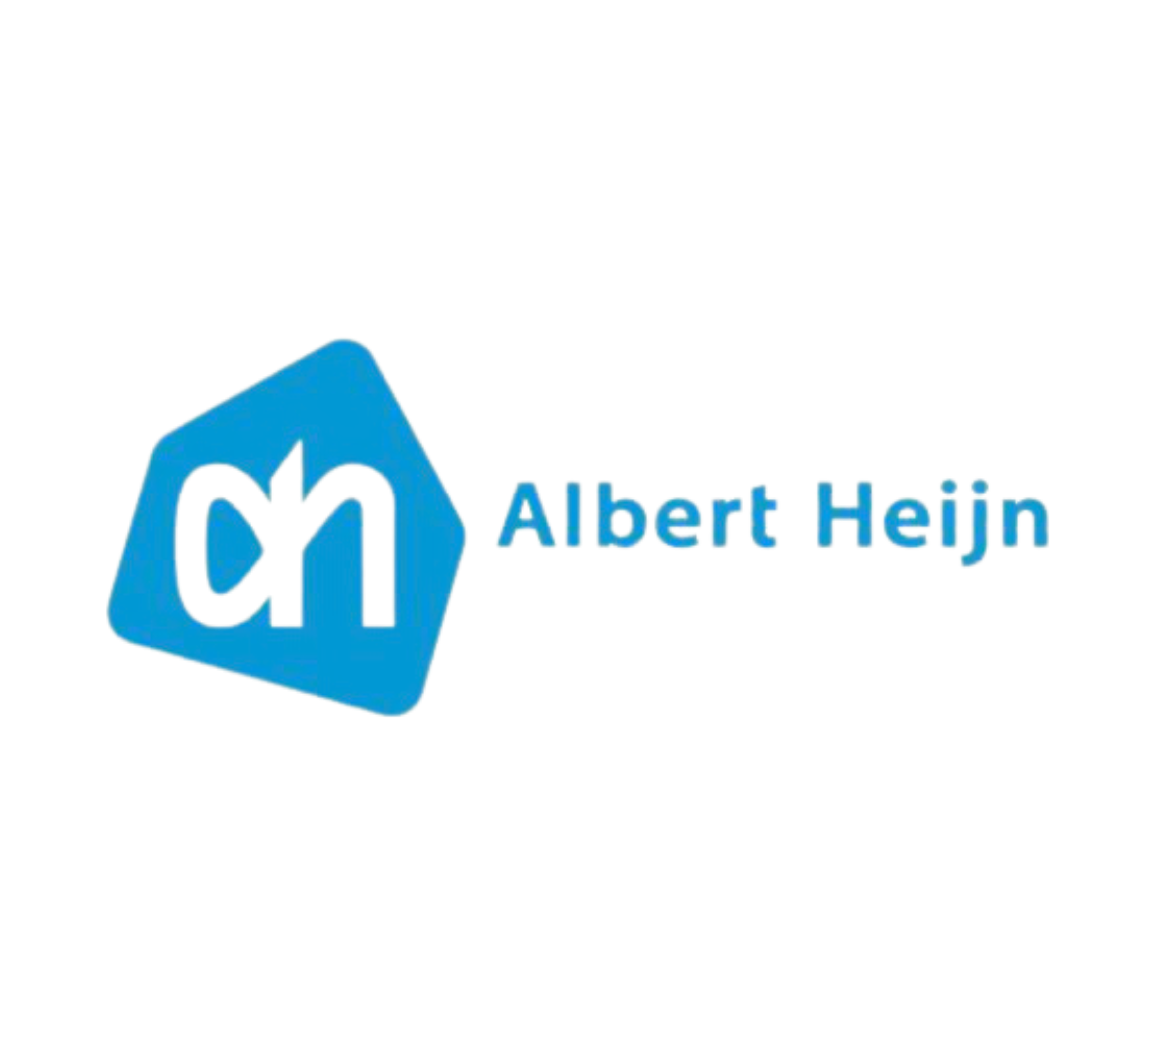 Online en in de winkel verkoper van Valess: Albert Heijn